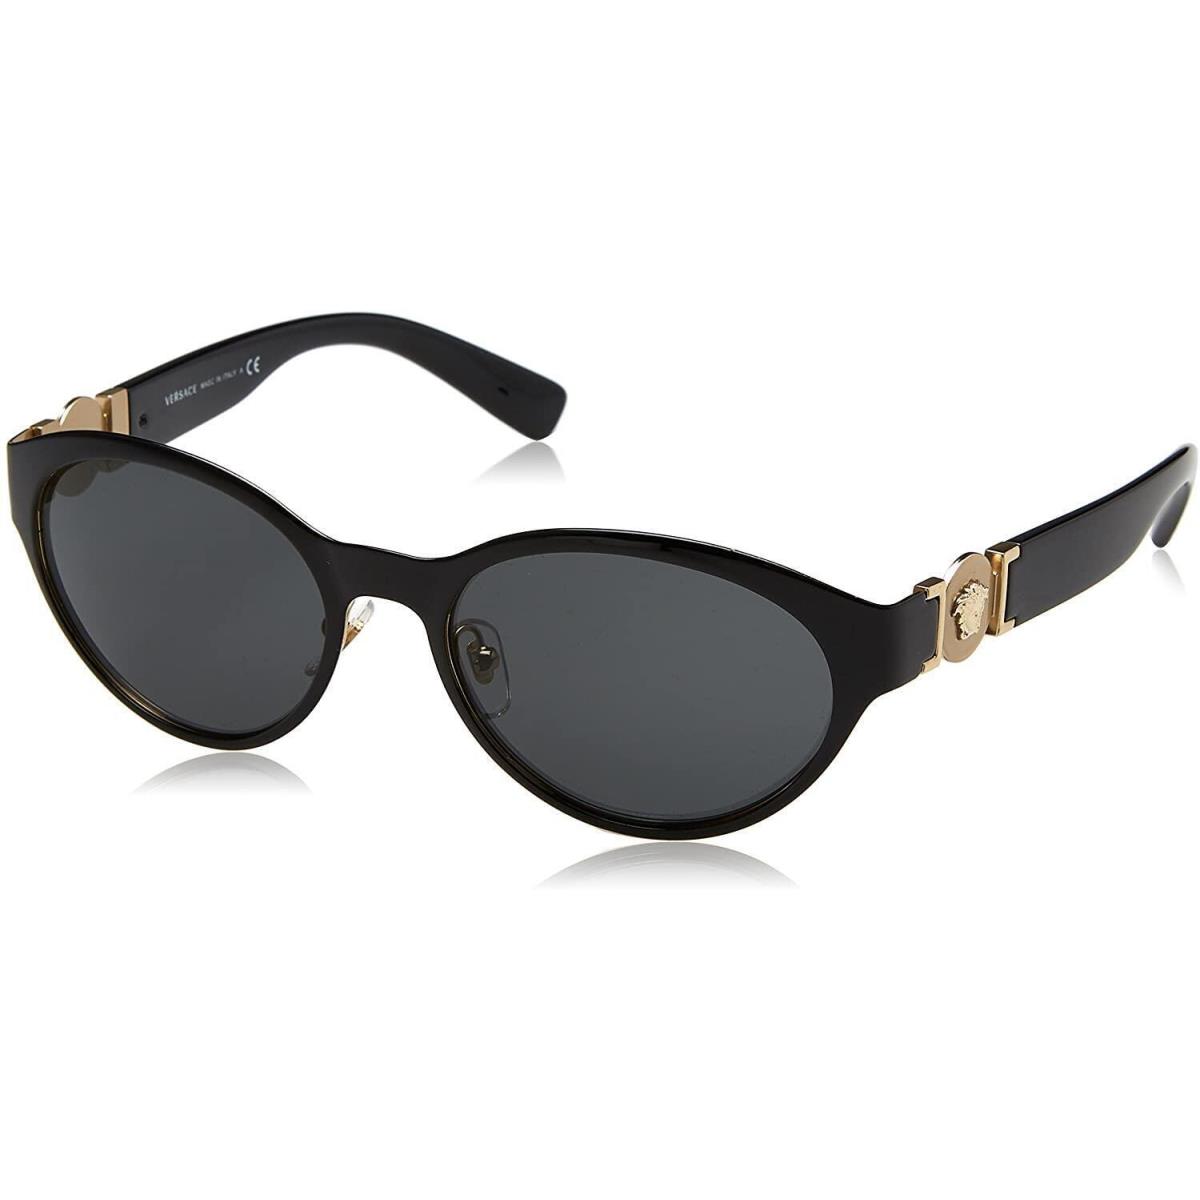 Versace Sunglasses VE2179 1291/87 Black Gold Frame Gray Lens 55MM